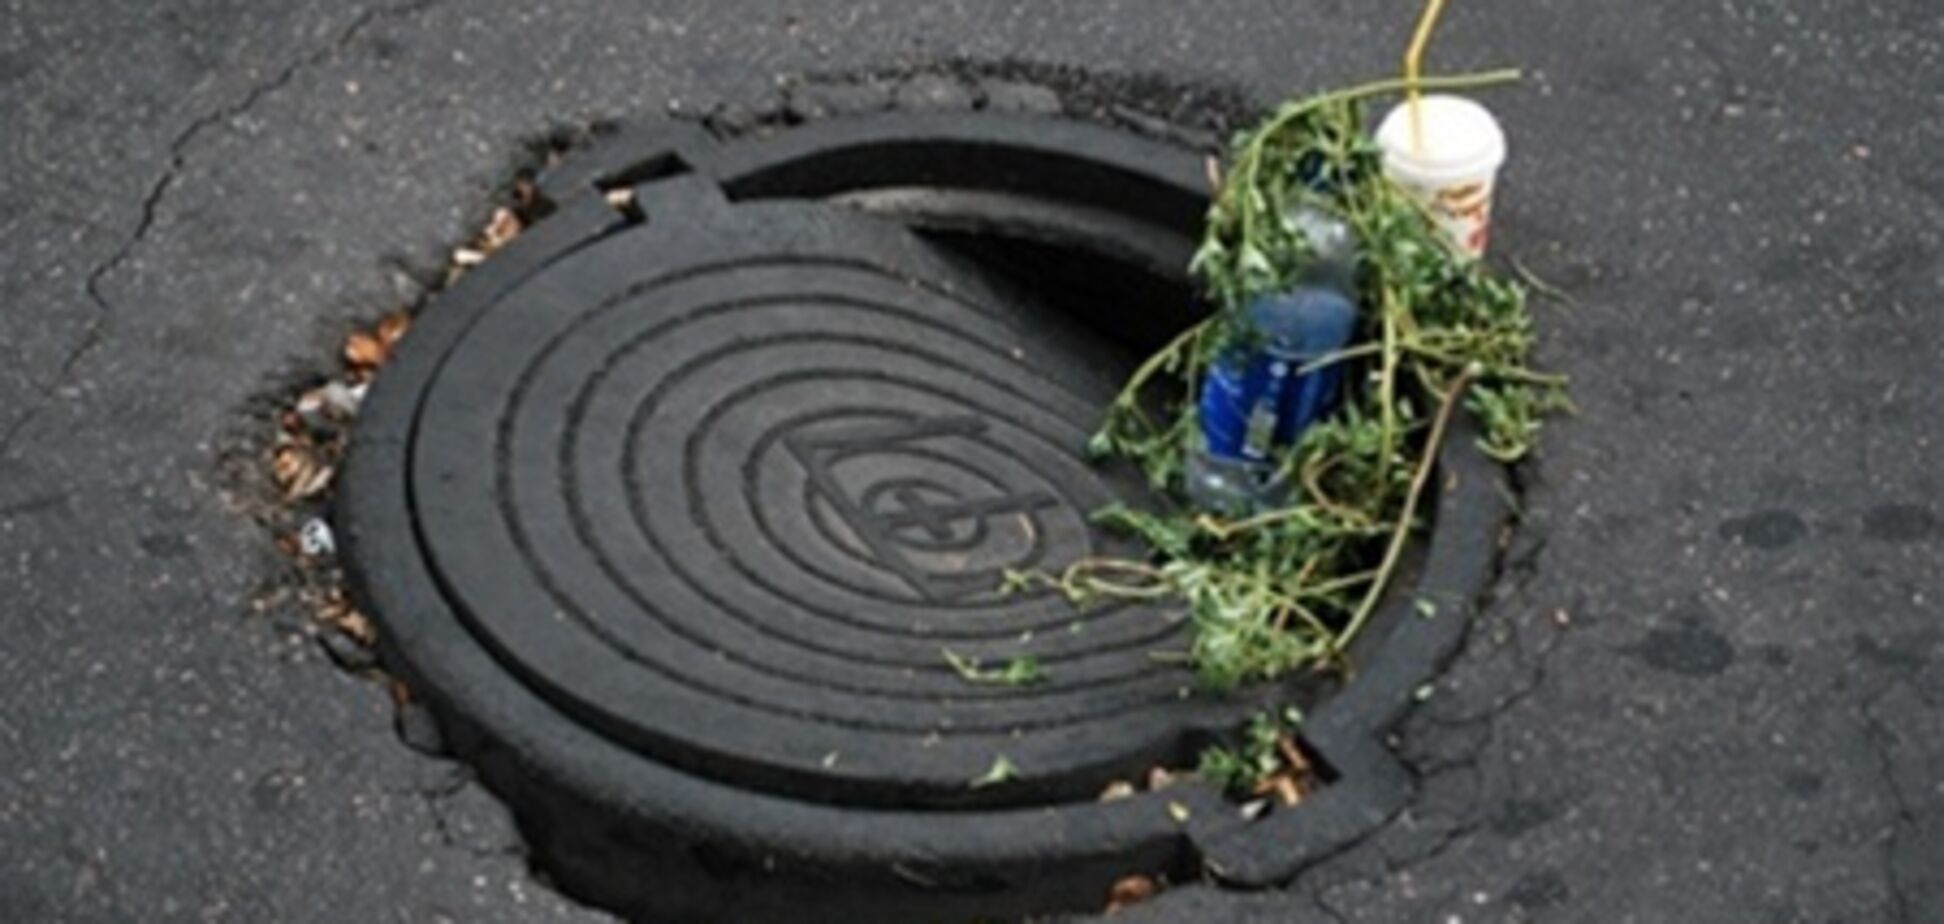 Гибель малыша в канализации: прокуратура нашла в Днепродзержинске 'почти 3 незакрытых люка'